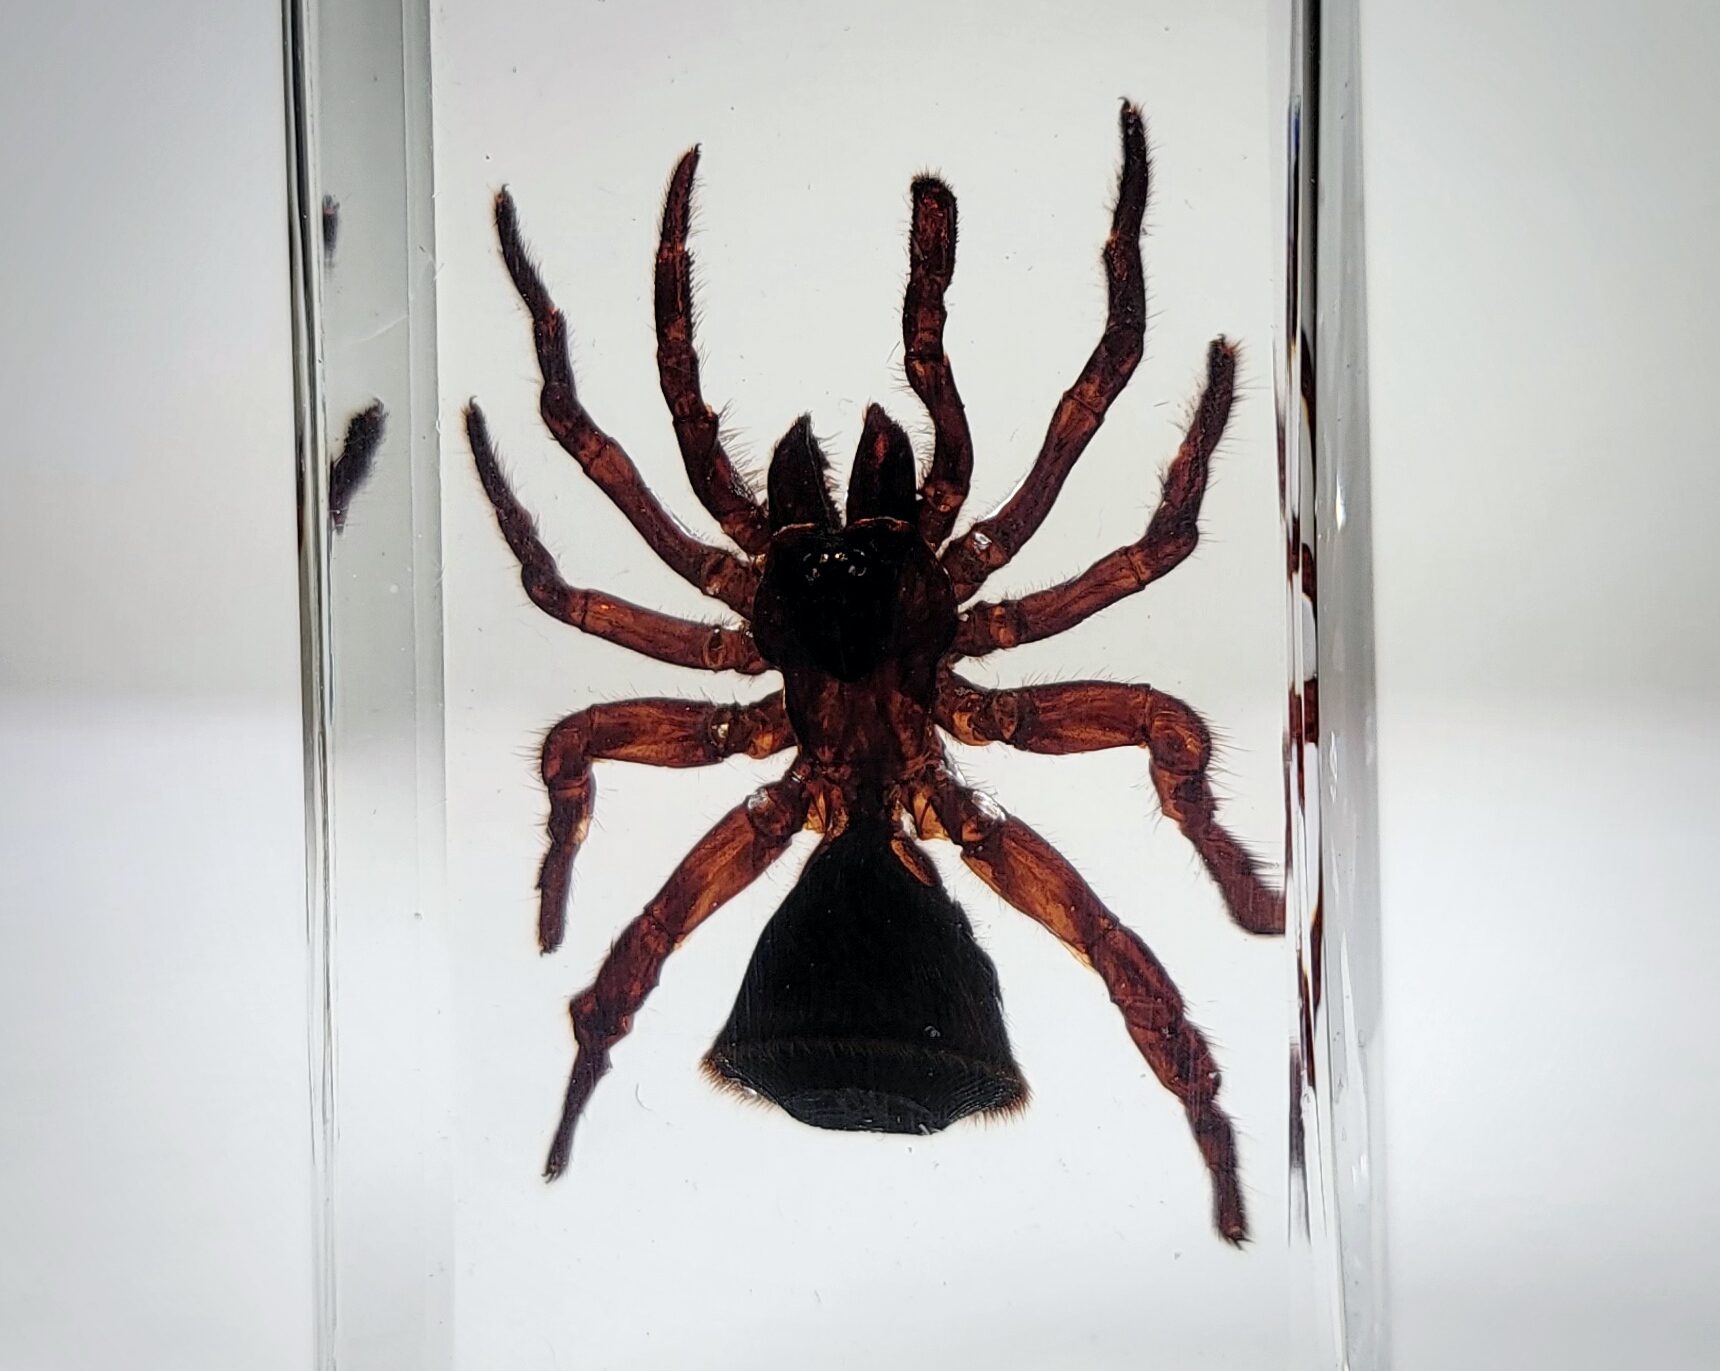 Hourglass Spider, Trap Door Spider in Resin